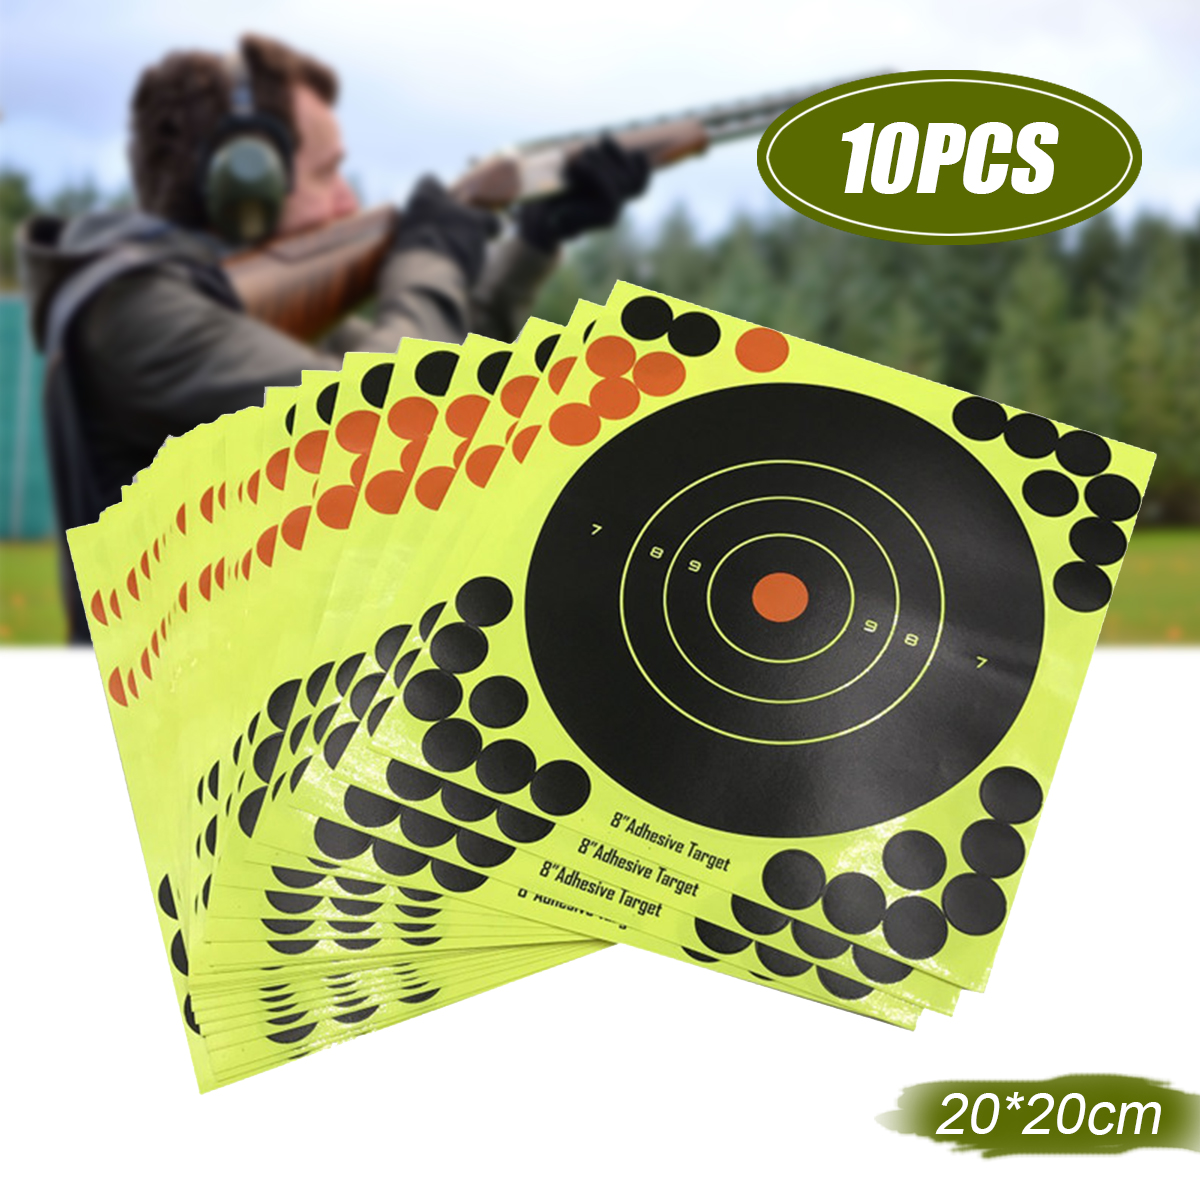 10PCS-Shooting-Adhesive-Targets-Splatter-Reactive-Target-Sticker-Paper--2020CM-1637261-2